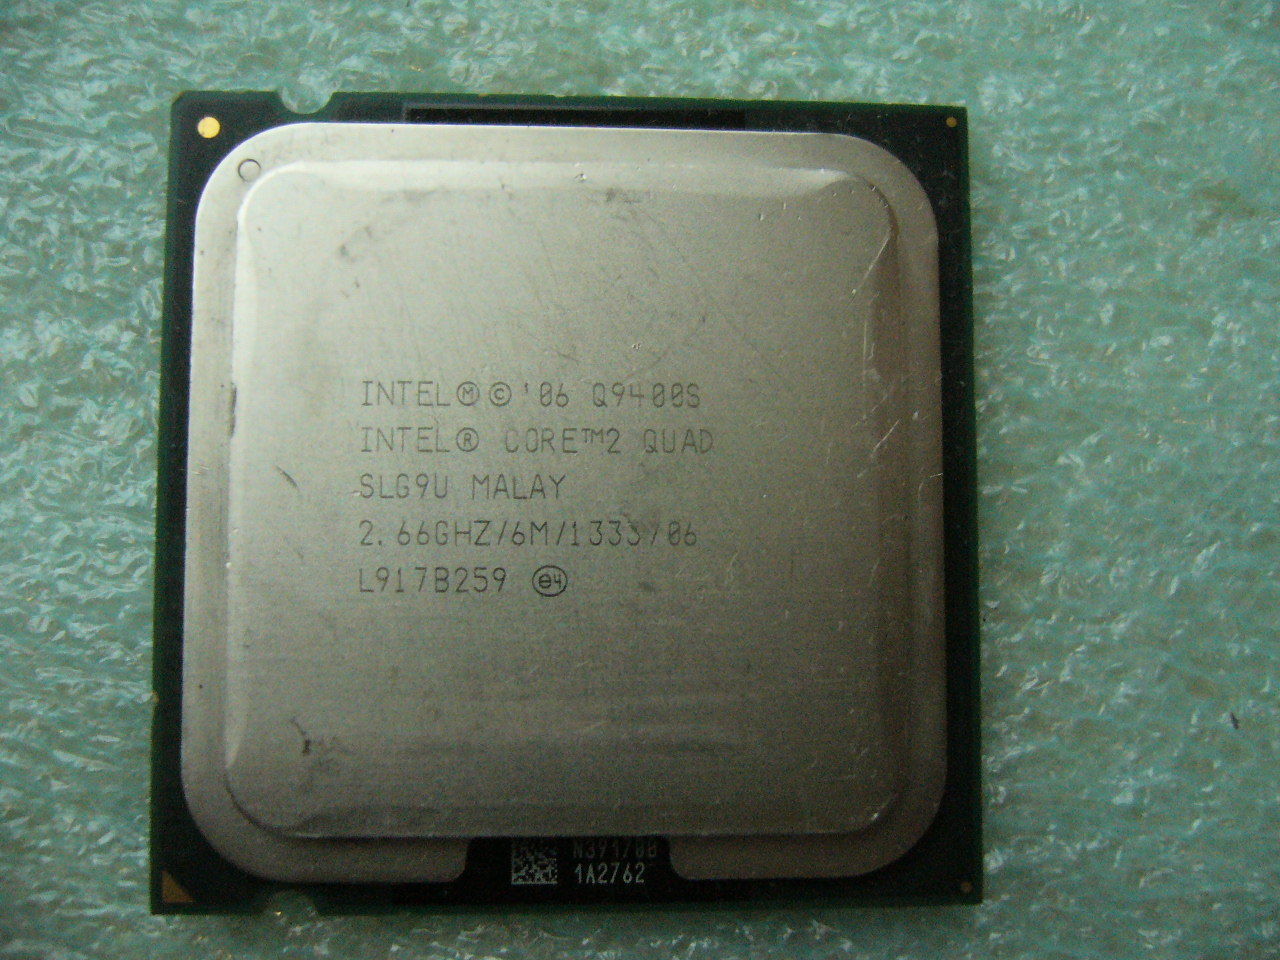 QTY 1x INTEL Quad Cores Q9400S CPU 2.66GHz/6MB/1333Mhz TDP 65W LGA775 SLG9U - zum Schließen ins Bild klicken